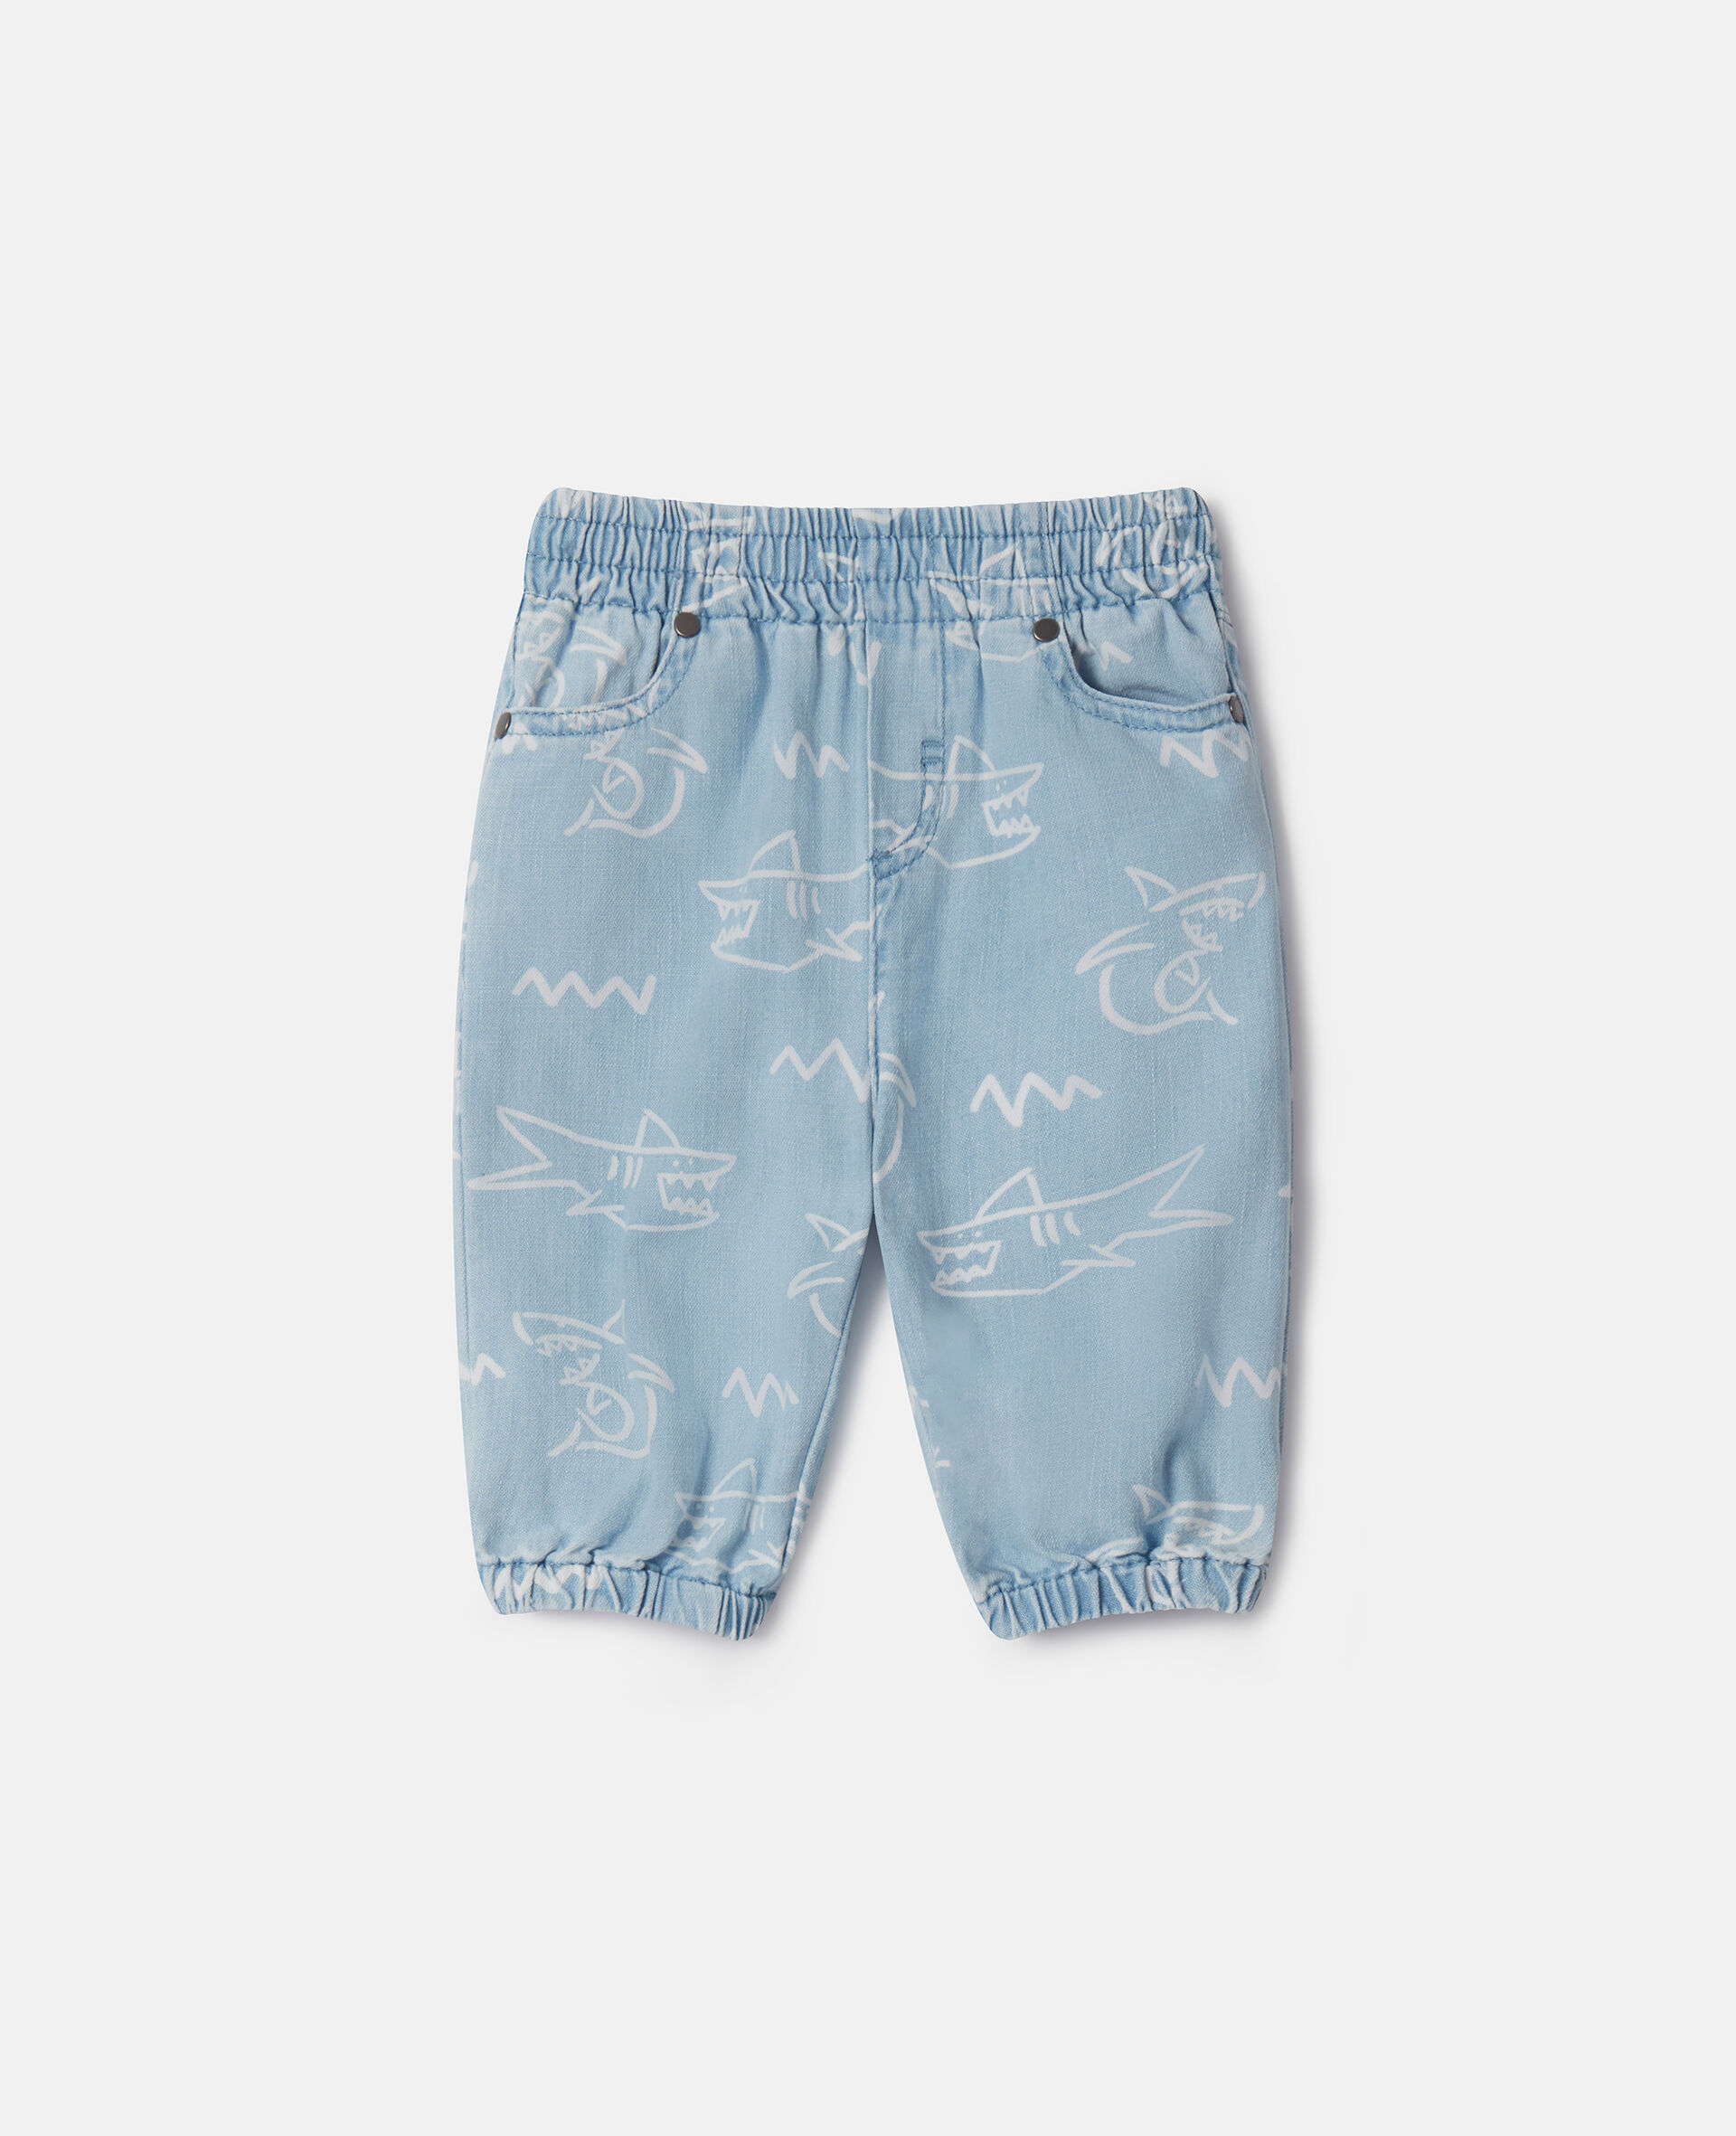 Shark Print Baby Jeans-Bleu-large image number 0